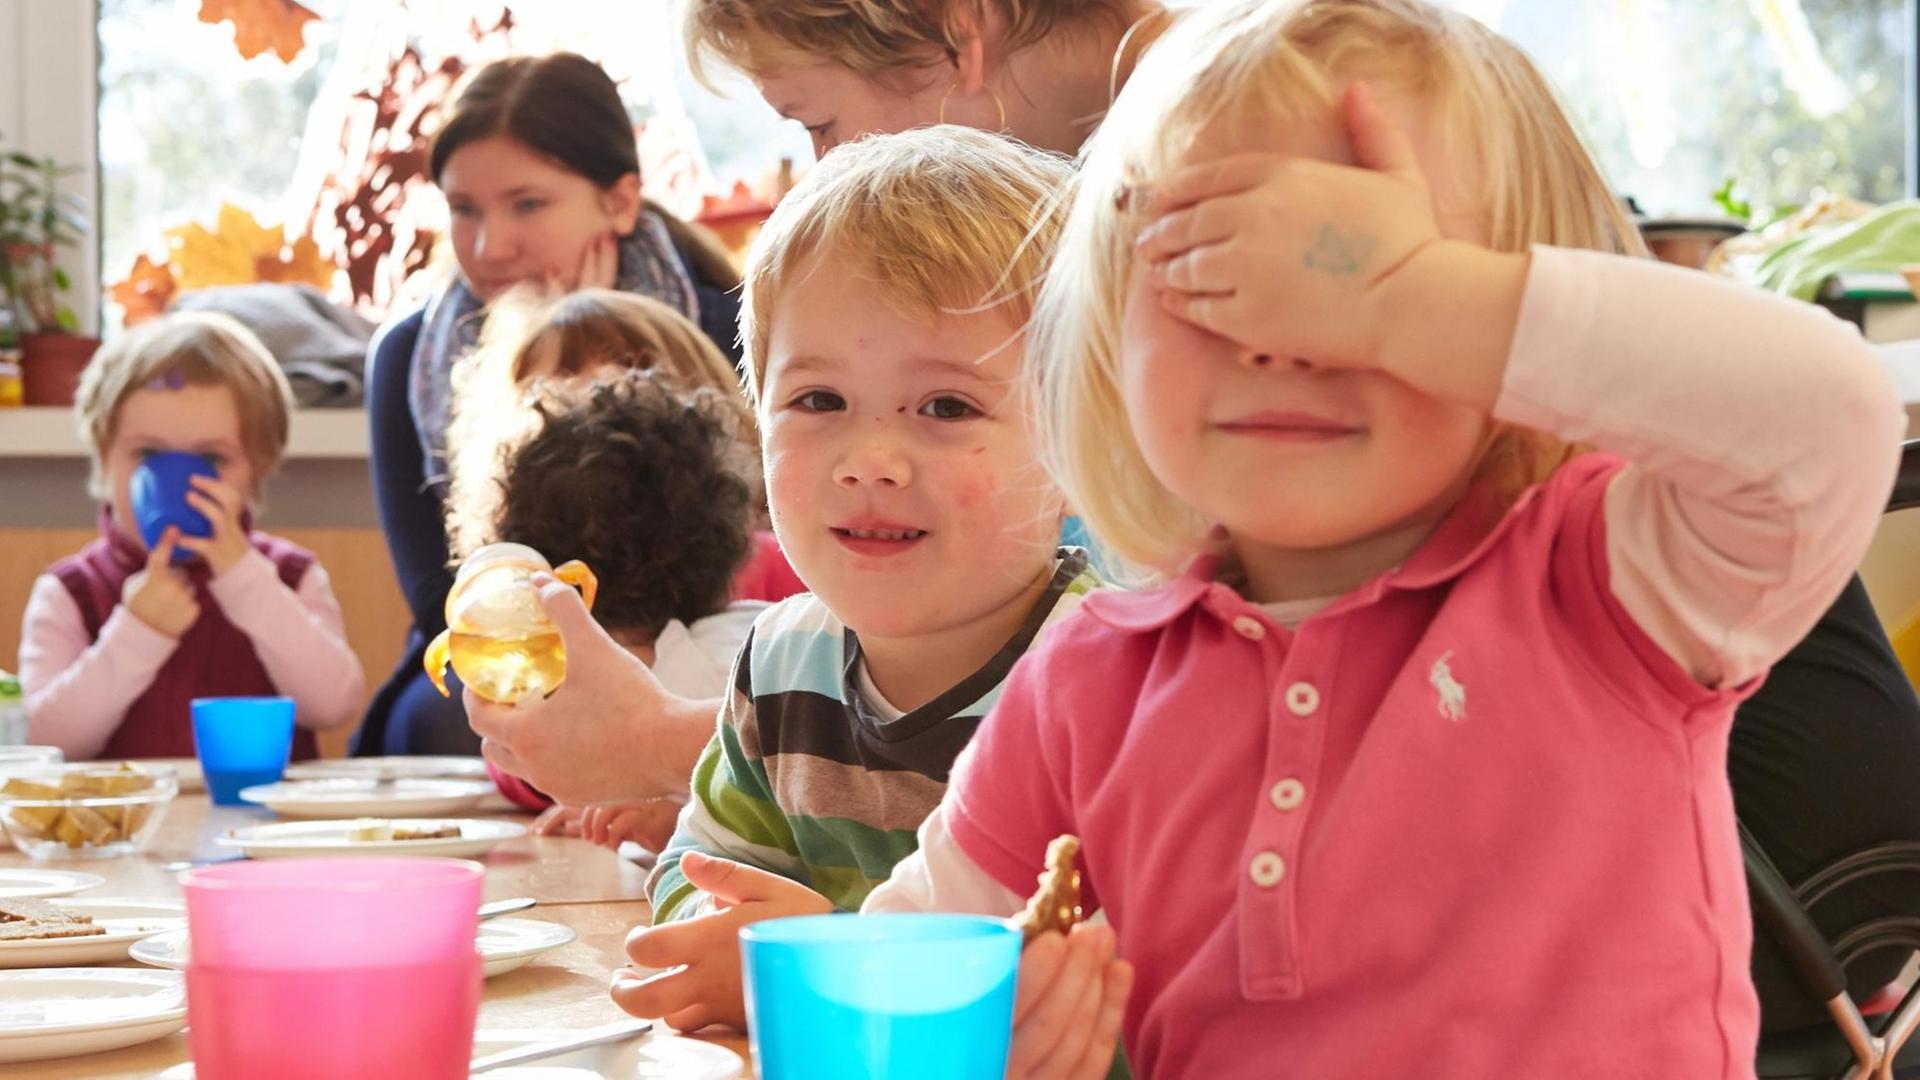 Ein Kind in einer Kita hält sich eine Hand vor die Augen und lacht. Dahinter sitzen weitere Kinder an einem Frühstückstisch.